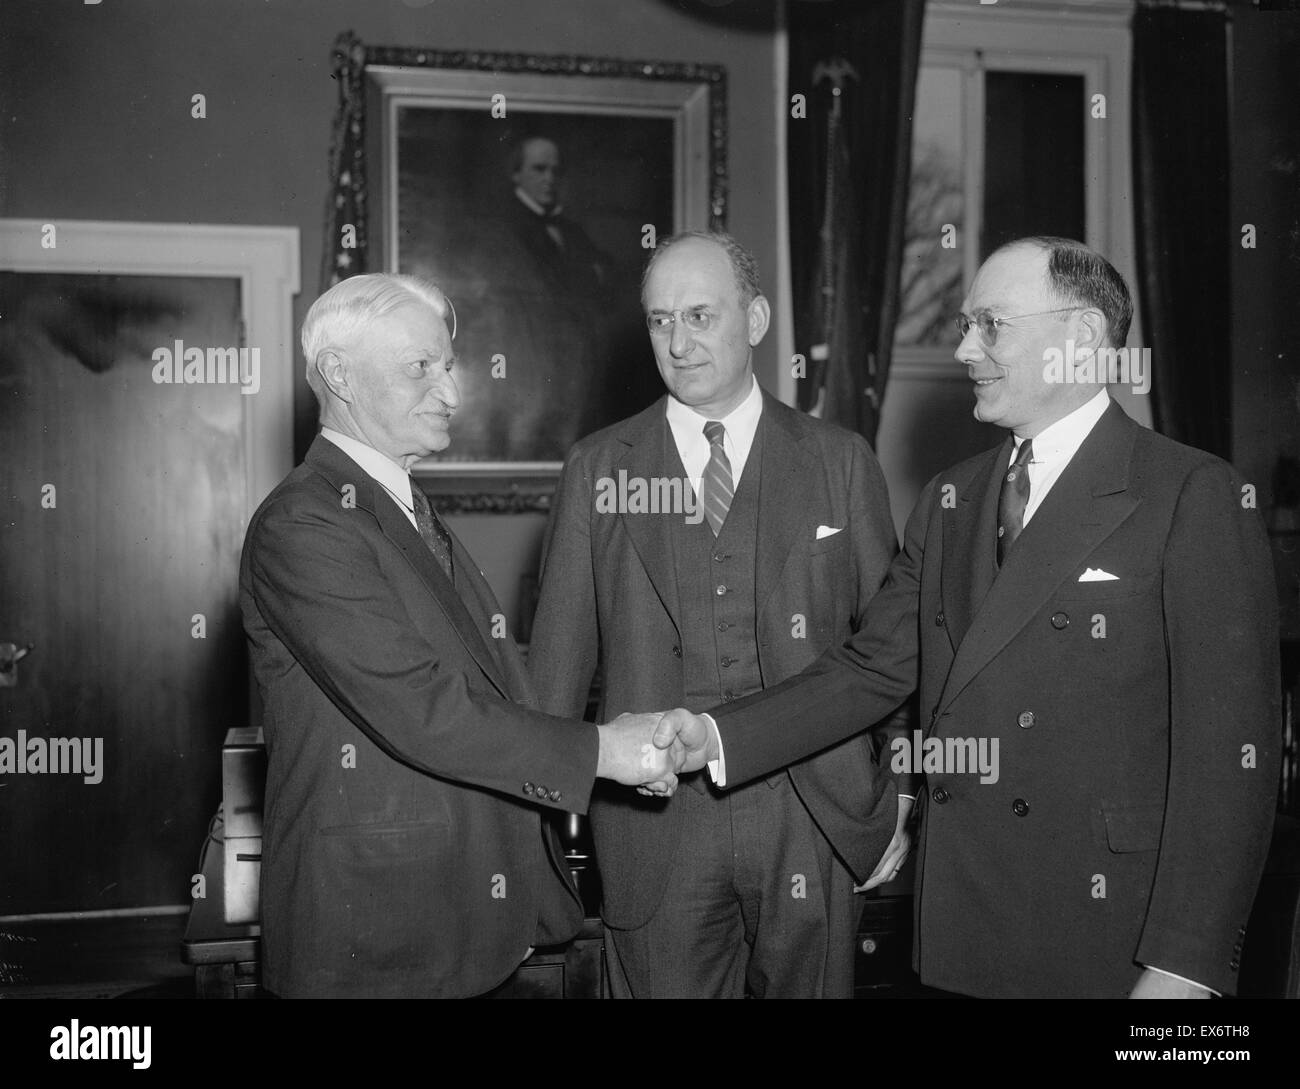 William H. Moran, directeur à la retraite de l'US Secret Service, félicite son successeur Frank J. Wilson, sec avec de bons du Trésor Morgenthau, 1936 Banque D'Images